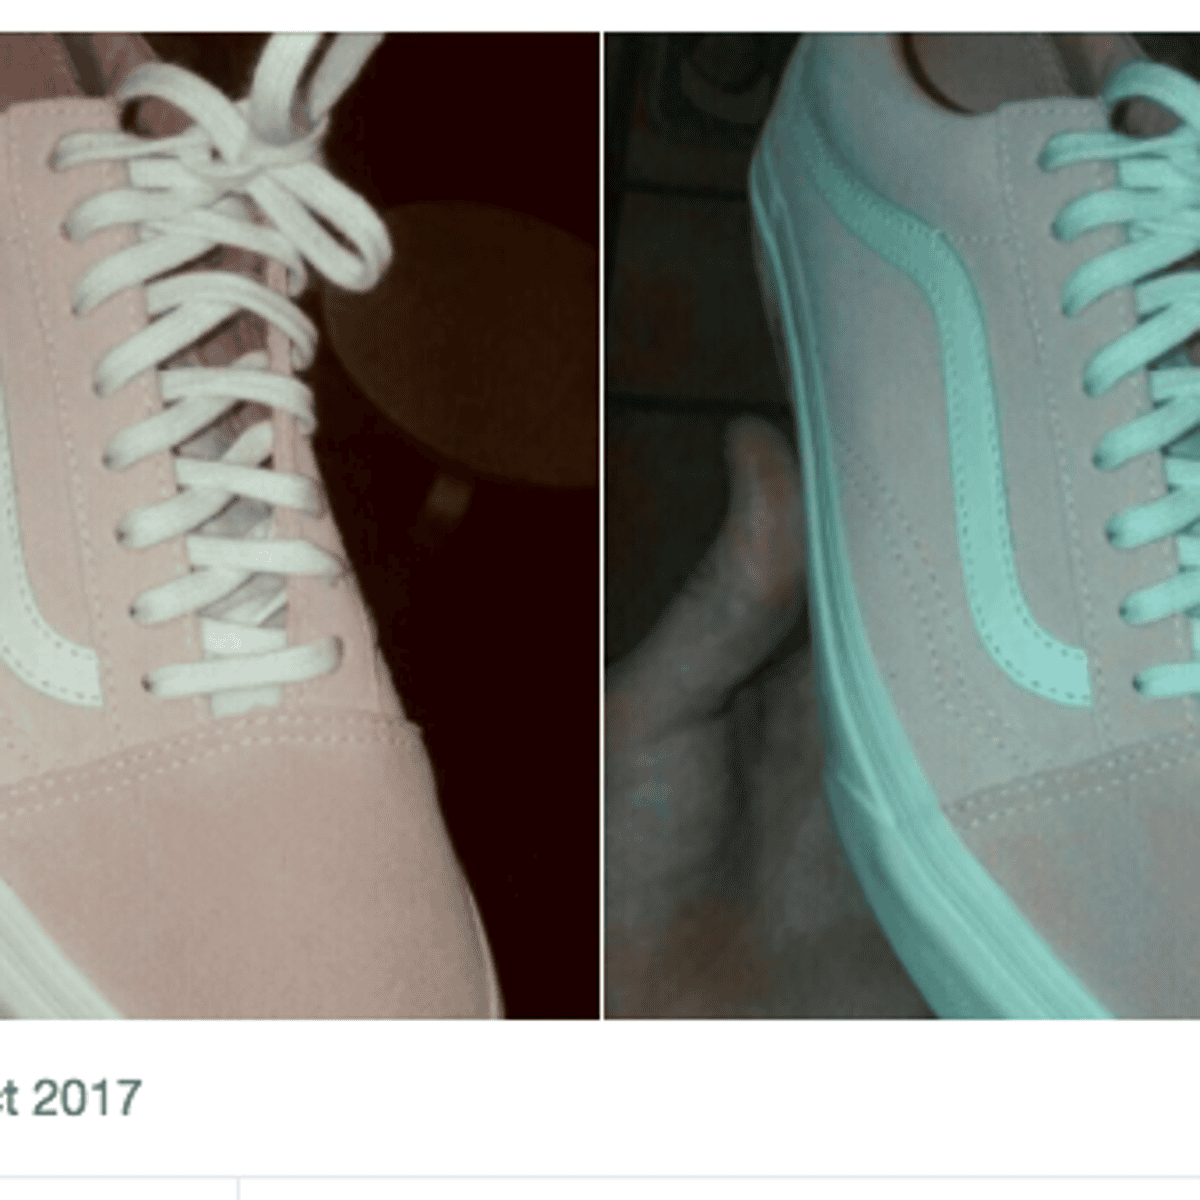 Кроссовки бело розовые или серо бирюзовые. Оптическая иллюзия цвет кроссовок. Кроссовок разного цвета. Тест с кроссовком на цвет. Кроссовки белые или розовые.